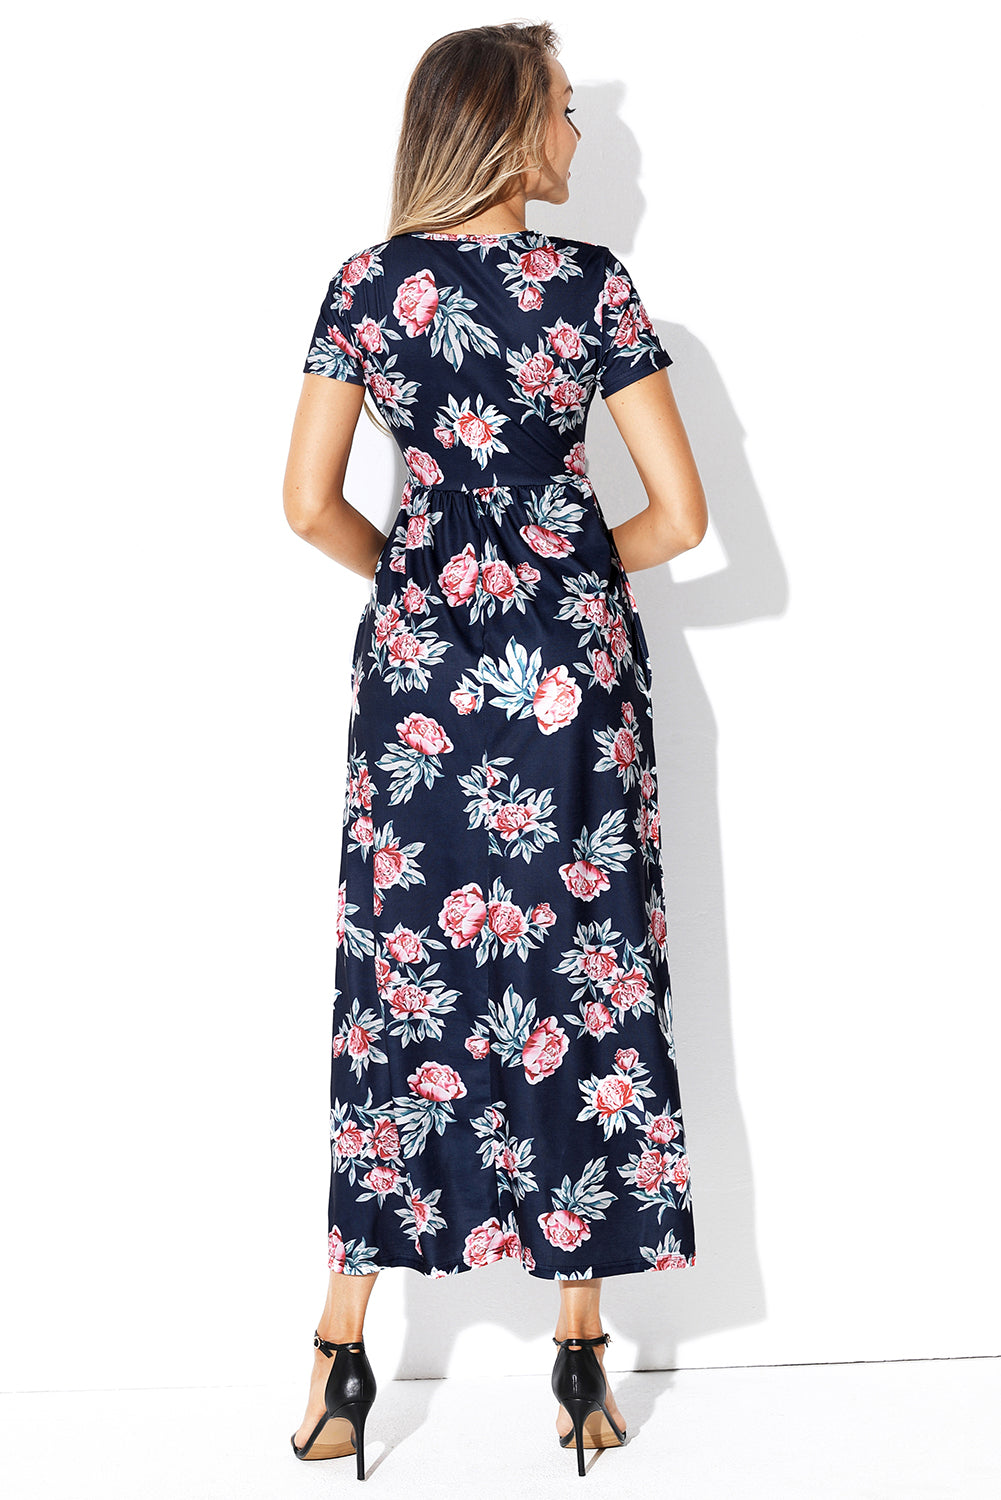 Pocket Design Short Sleeve Black Floral Maxi Dress